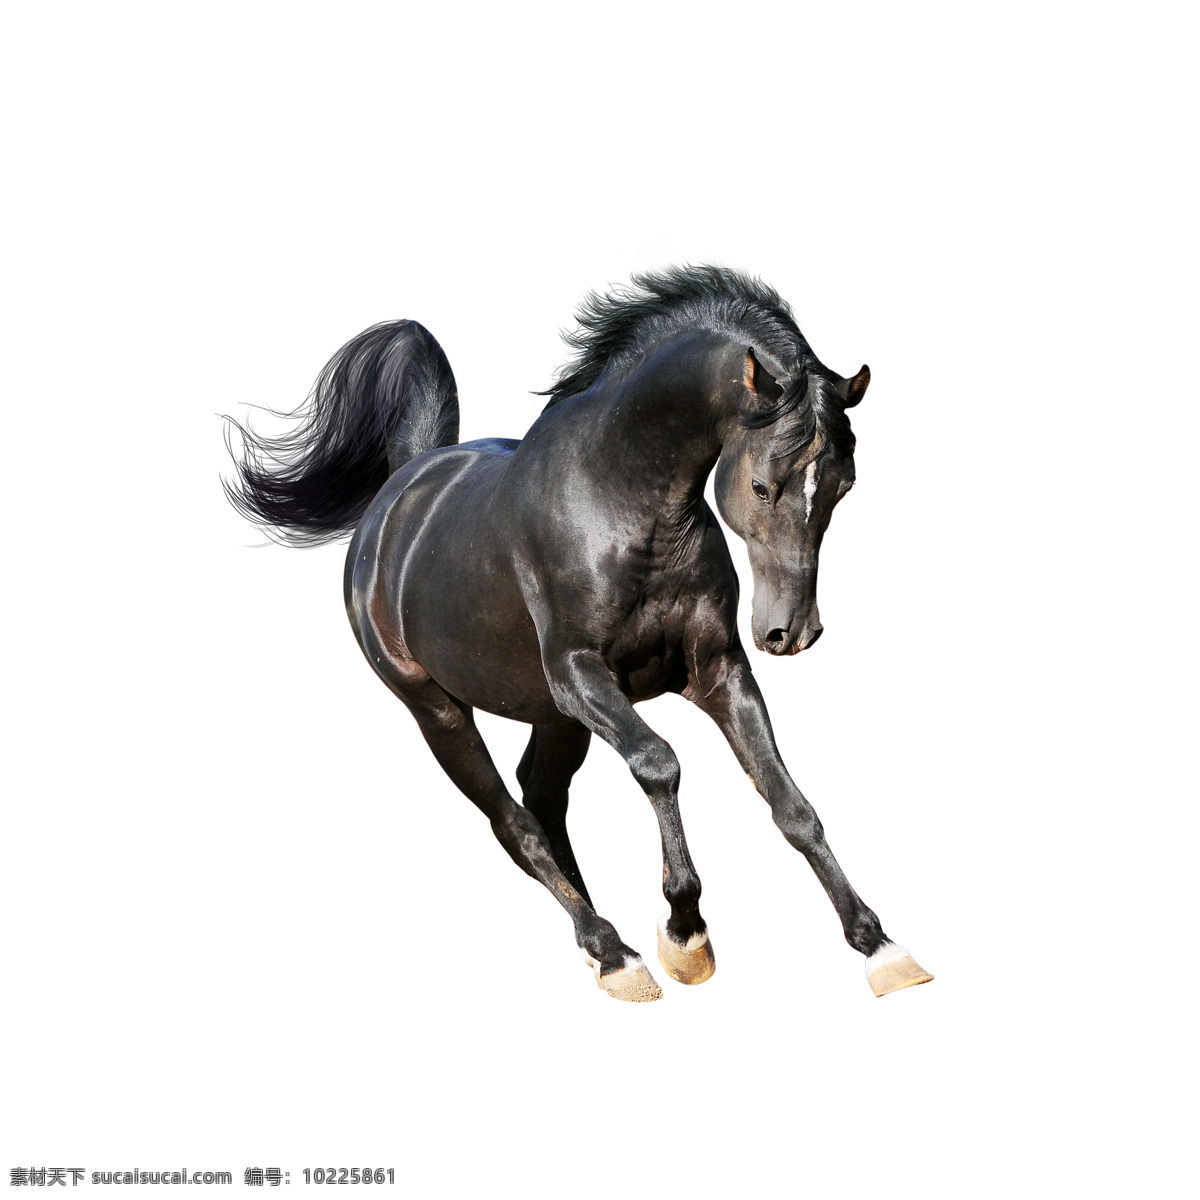 匹 狂奔 黑马 一匹 奔跑 飞奔 骏马 马匹 小马驹 马 动物 陆地动物 生物世界